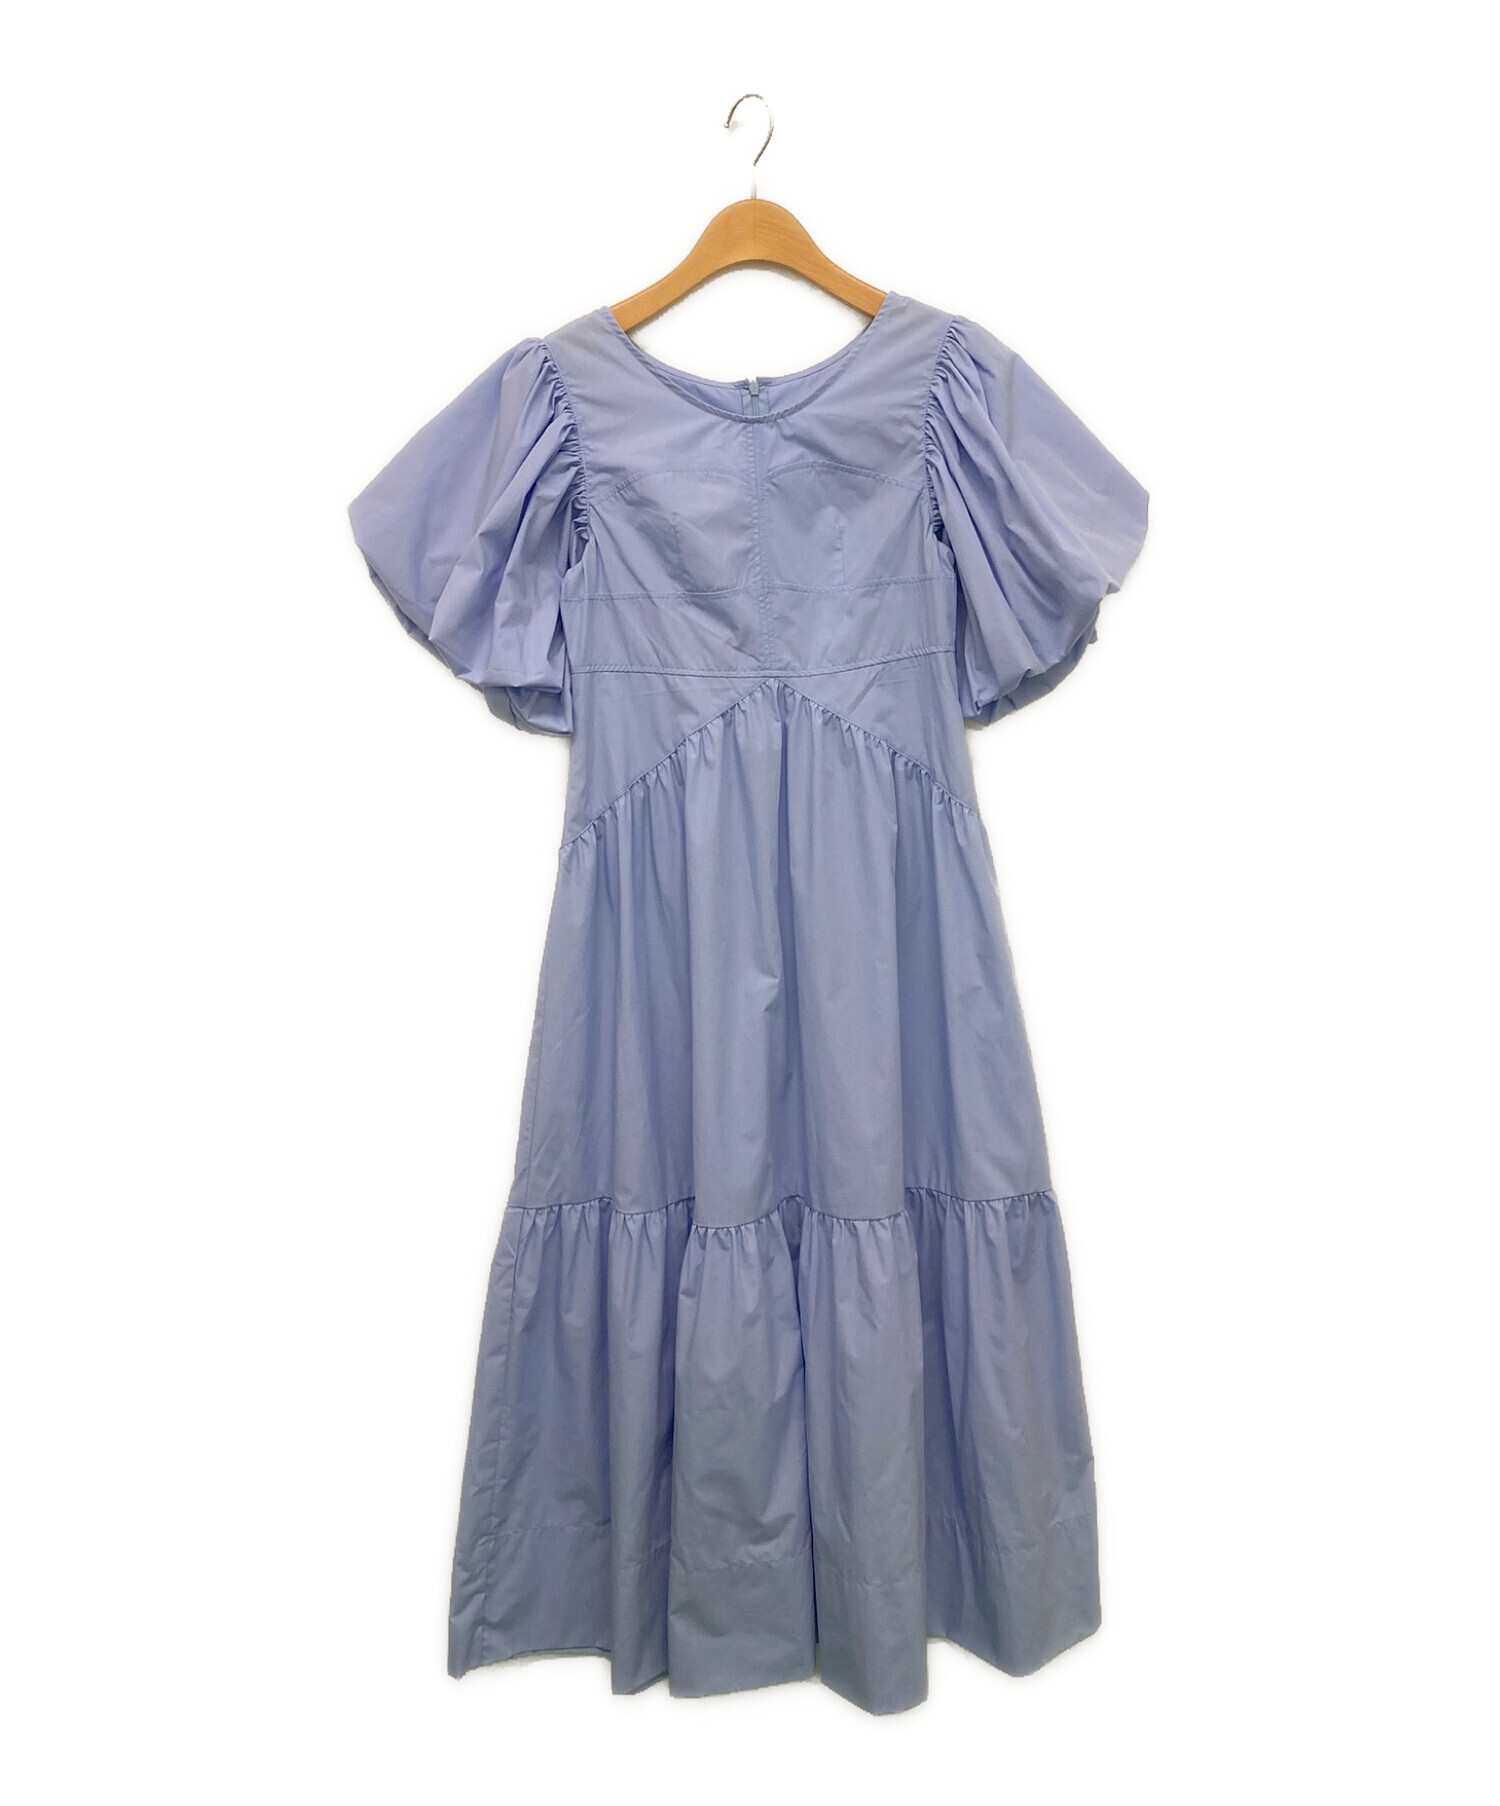 RANDEBOO (ランデブー) Lingerie puff dress ライトブルー サイズ:F